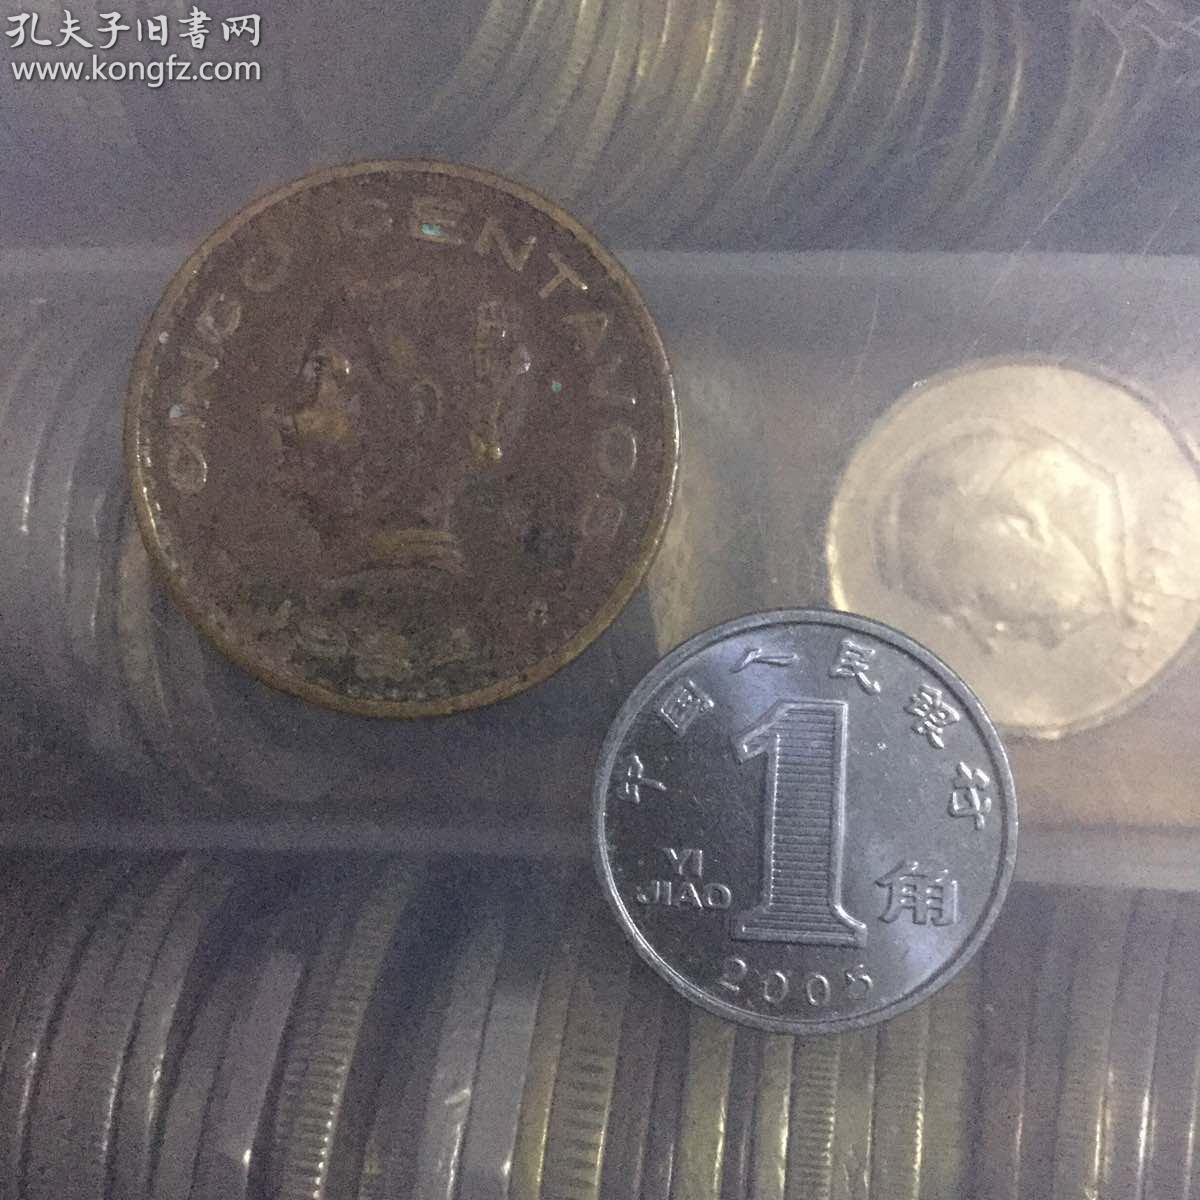 1944年 墨西哥5分 世界硬币外国硬币纪念币